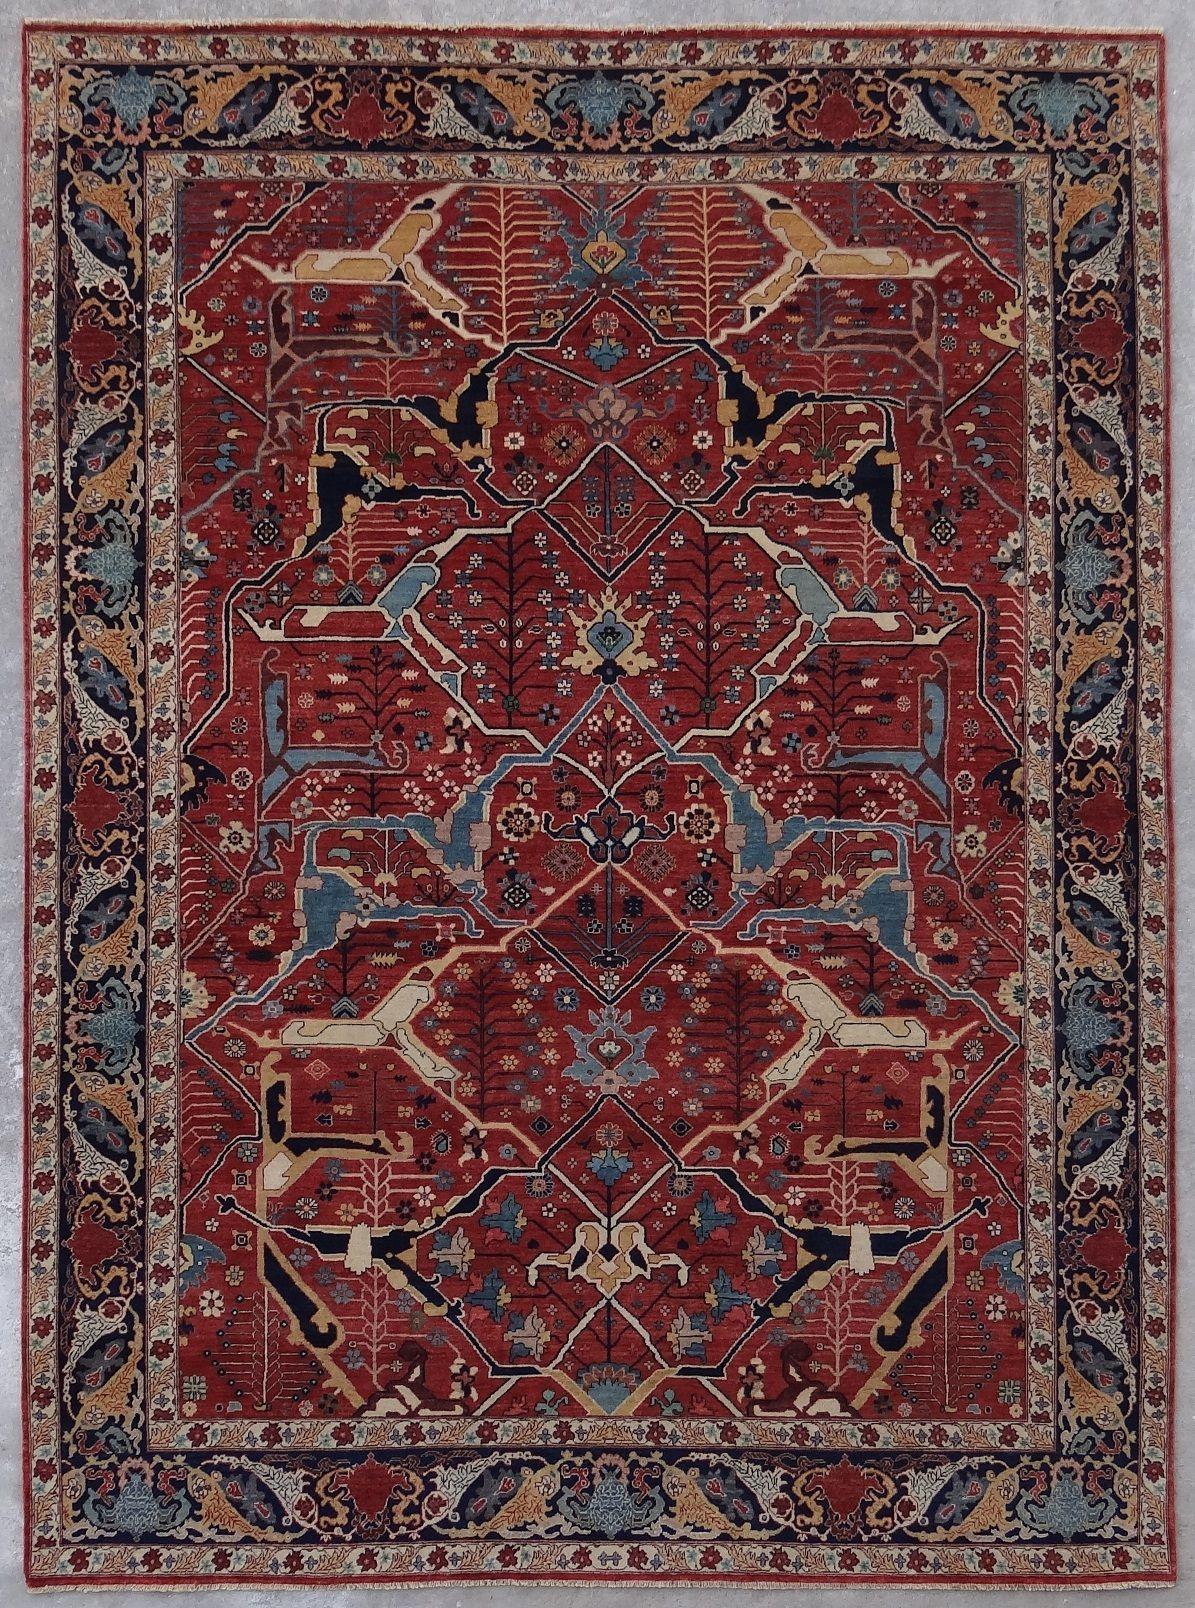 Schöner neuer Teppich mit schönem persischen Design und schönen Farben, komplett handgeknüpft mit Wolle und Seidensamt auf Baumwollbasis.